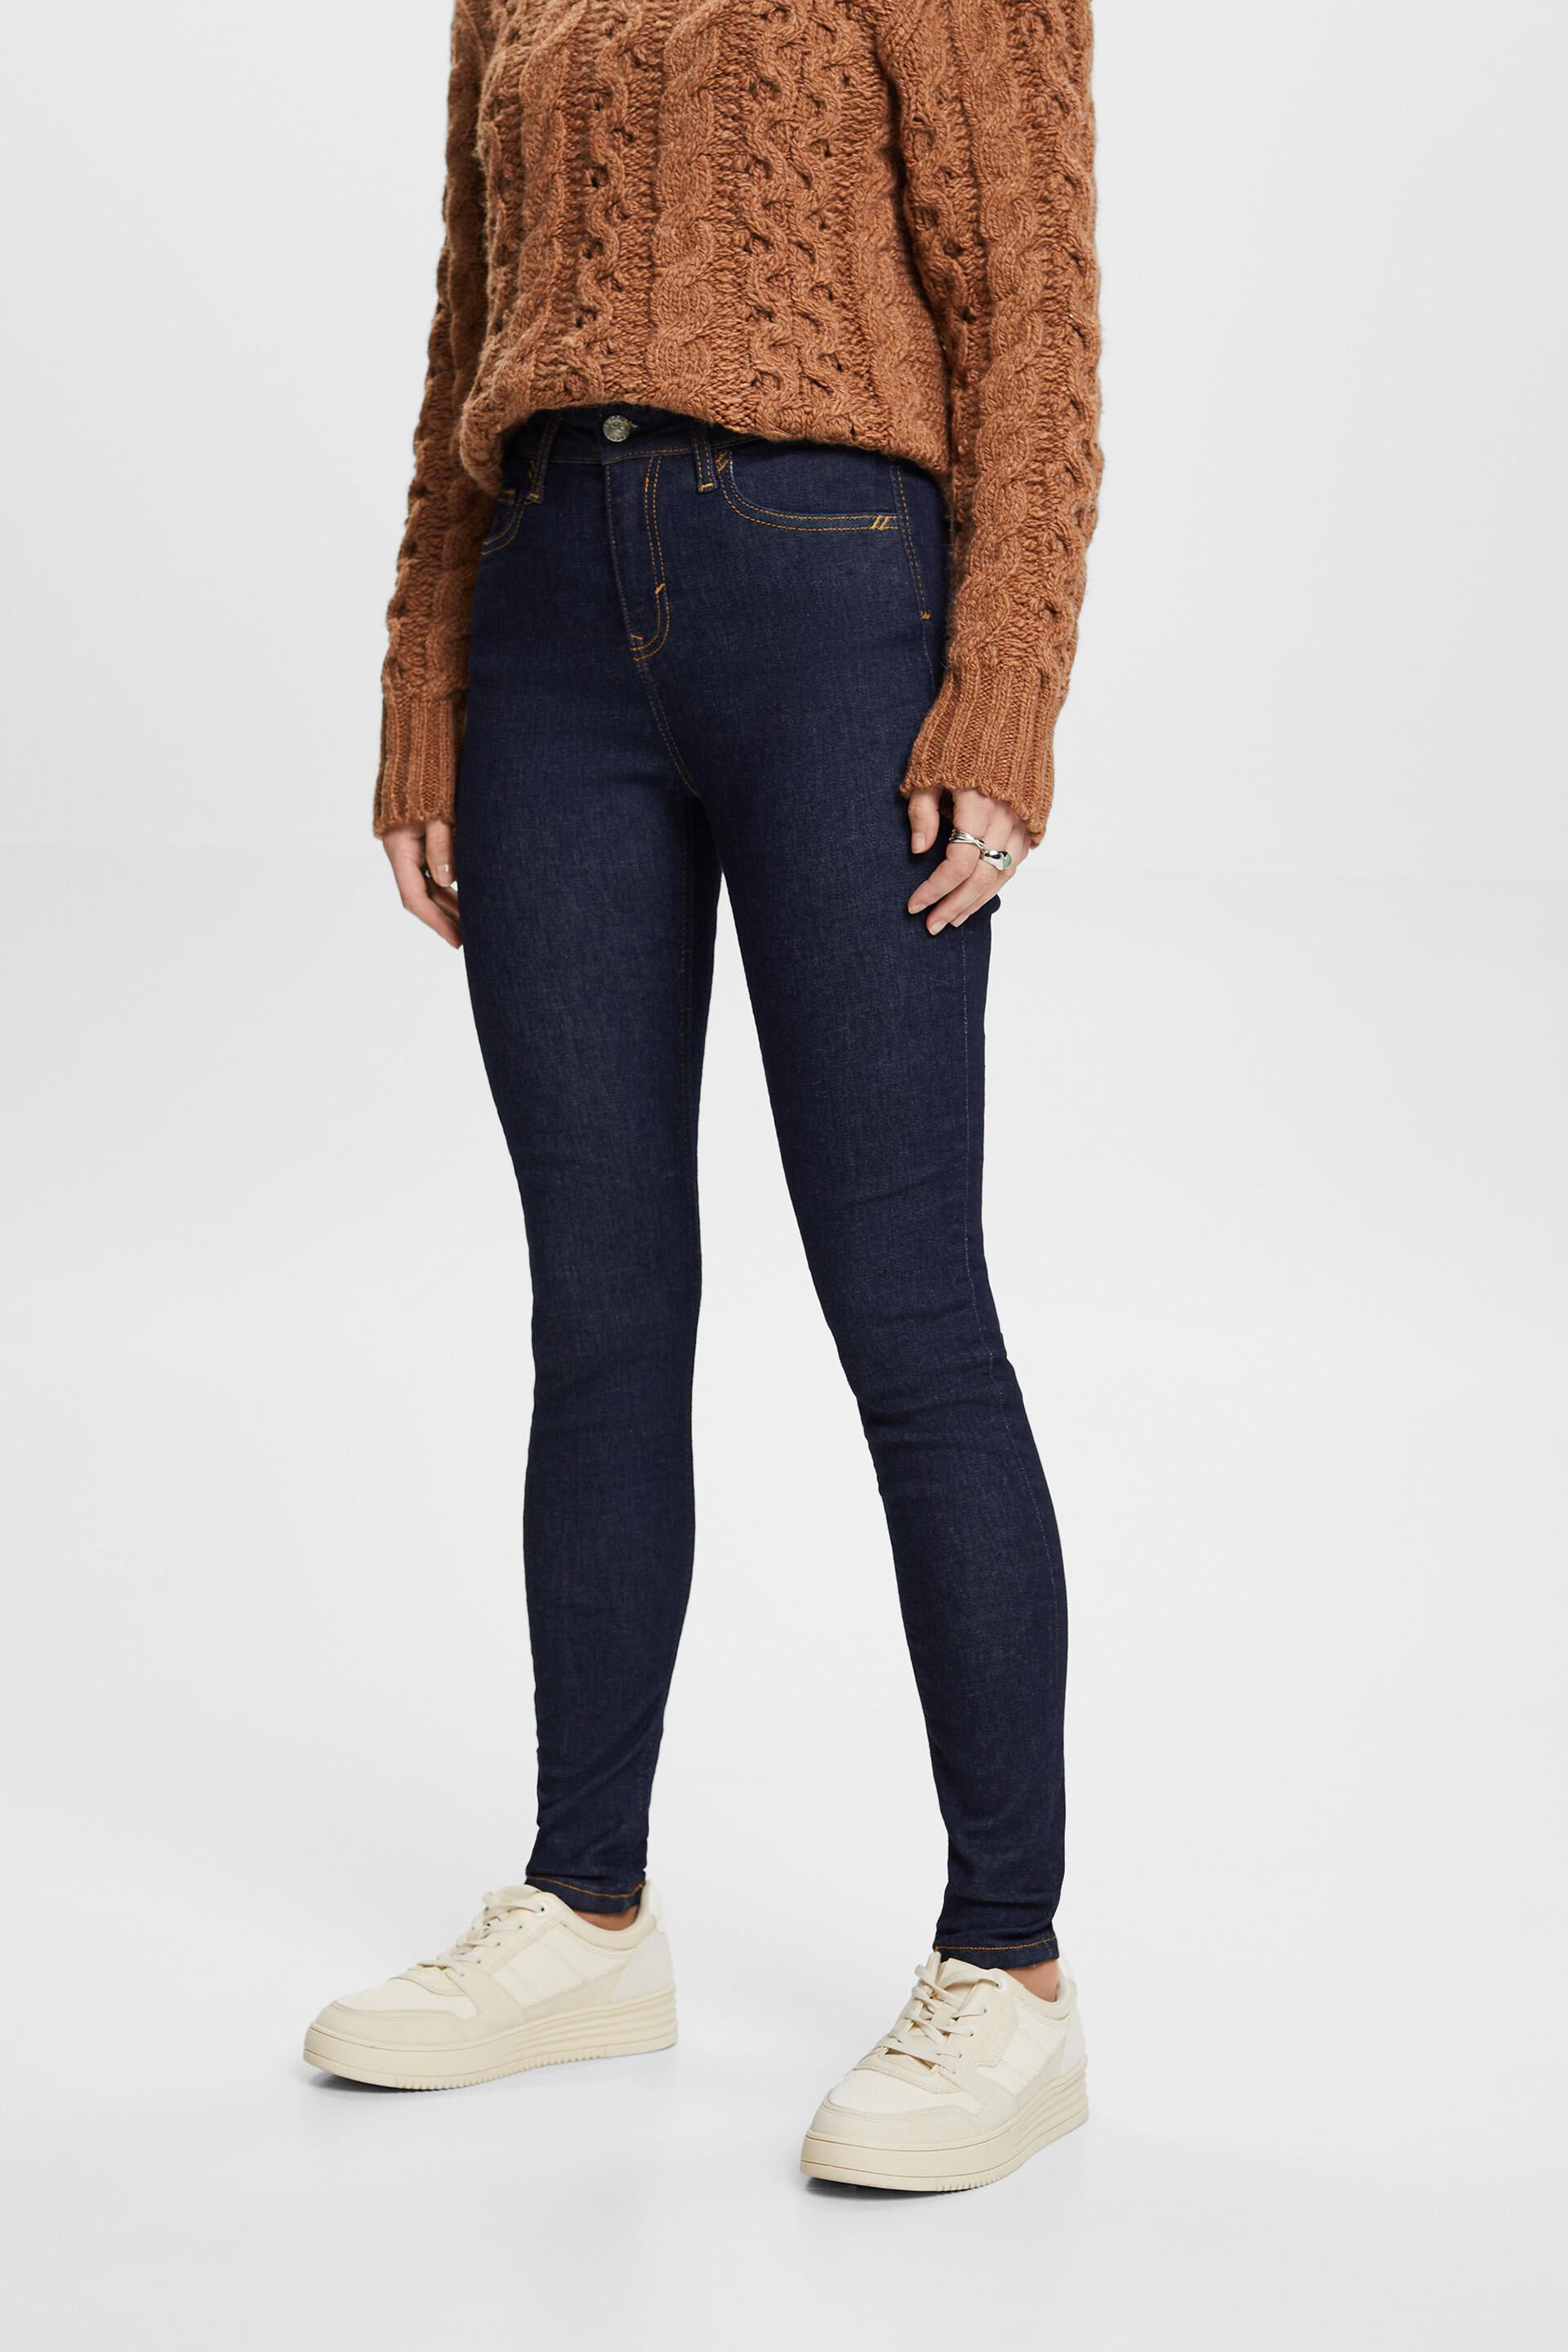 Esprit Damen High-rise skinny jeans